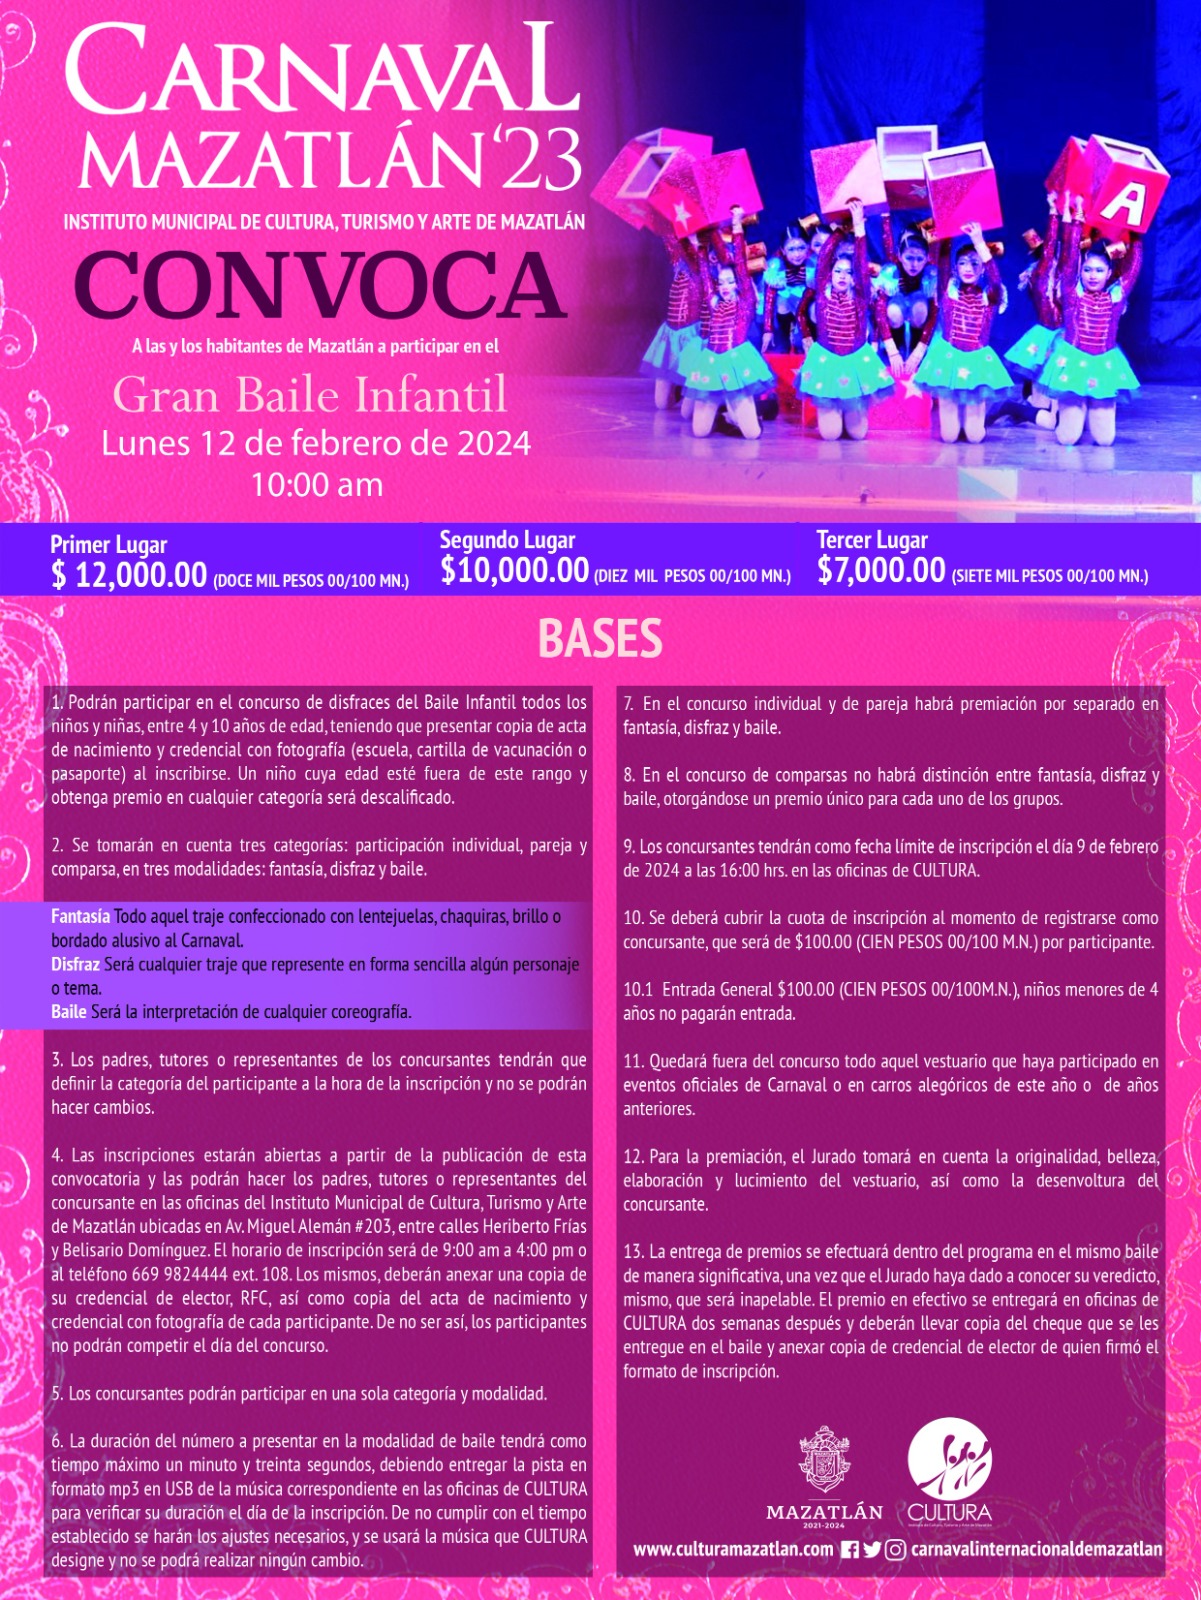 Los Vientos de Carnaval Soplan en Mazatlán en Pleno Septiembre Lanzan las Convocatorias a los Distintos Reinados 2024 Gran Baile Infantil a